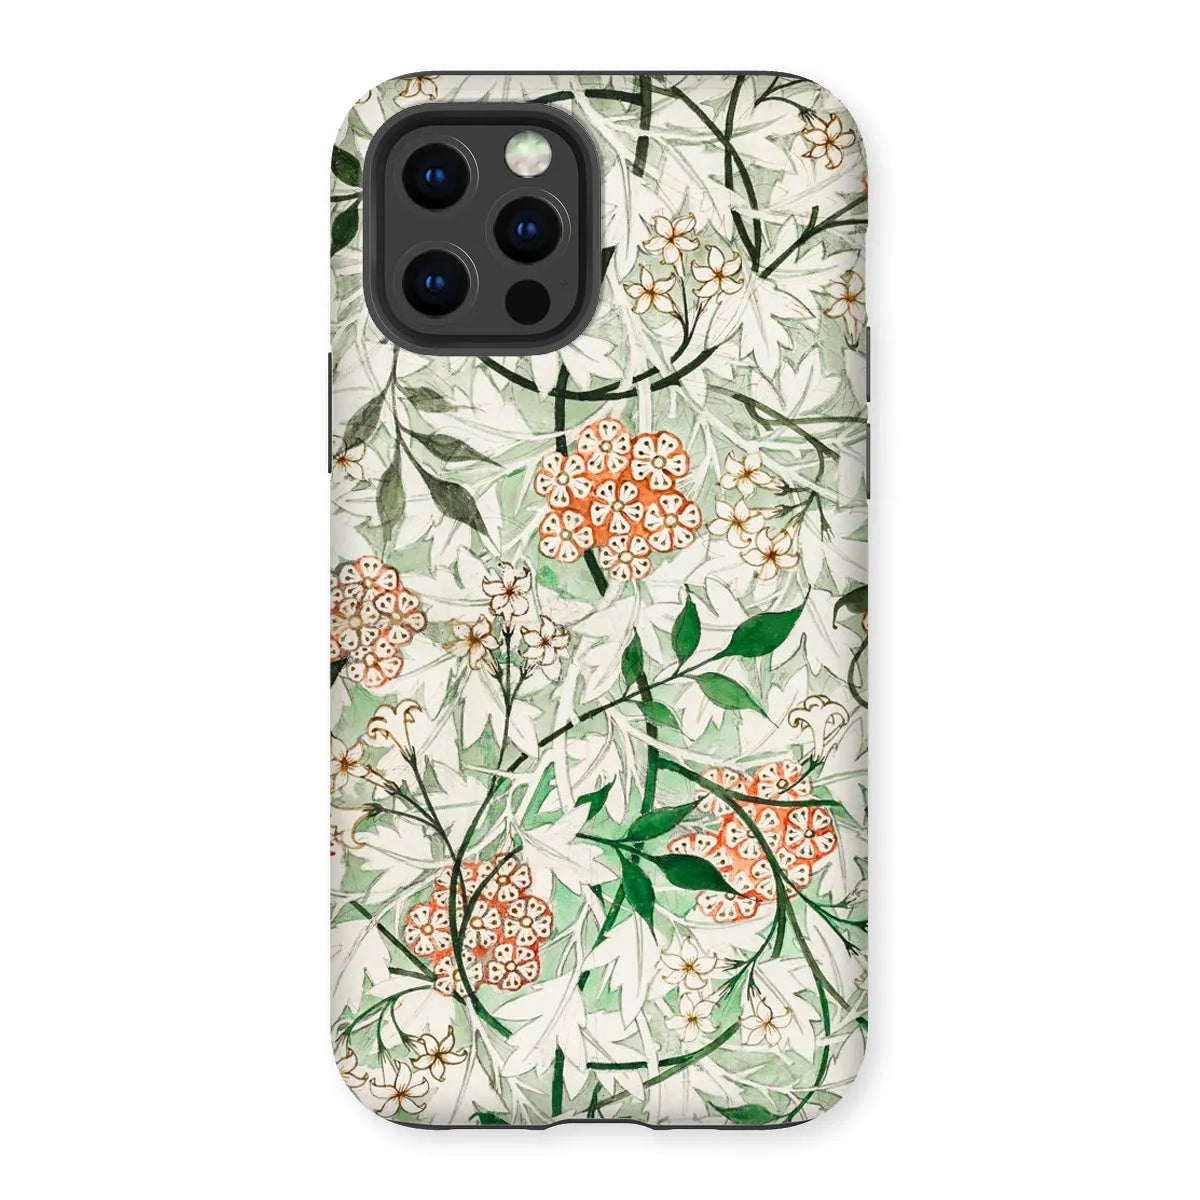 Jasmine Floral Aesthetic Art Phone Case - William Morris - Iphone 12 Pro / Matte - Mobile Phone Cases - Aesthetic Art